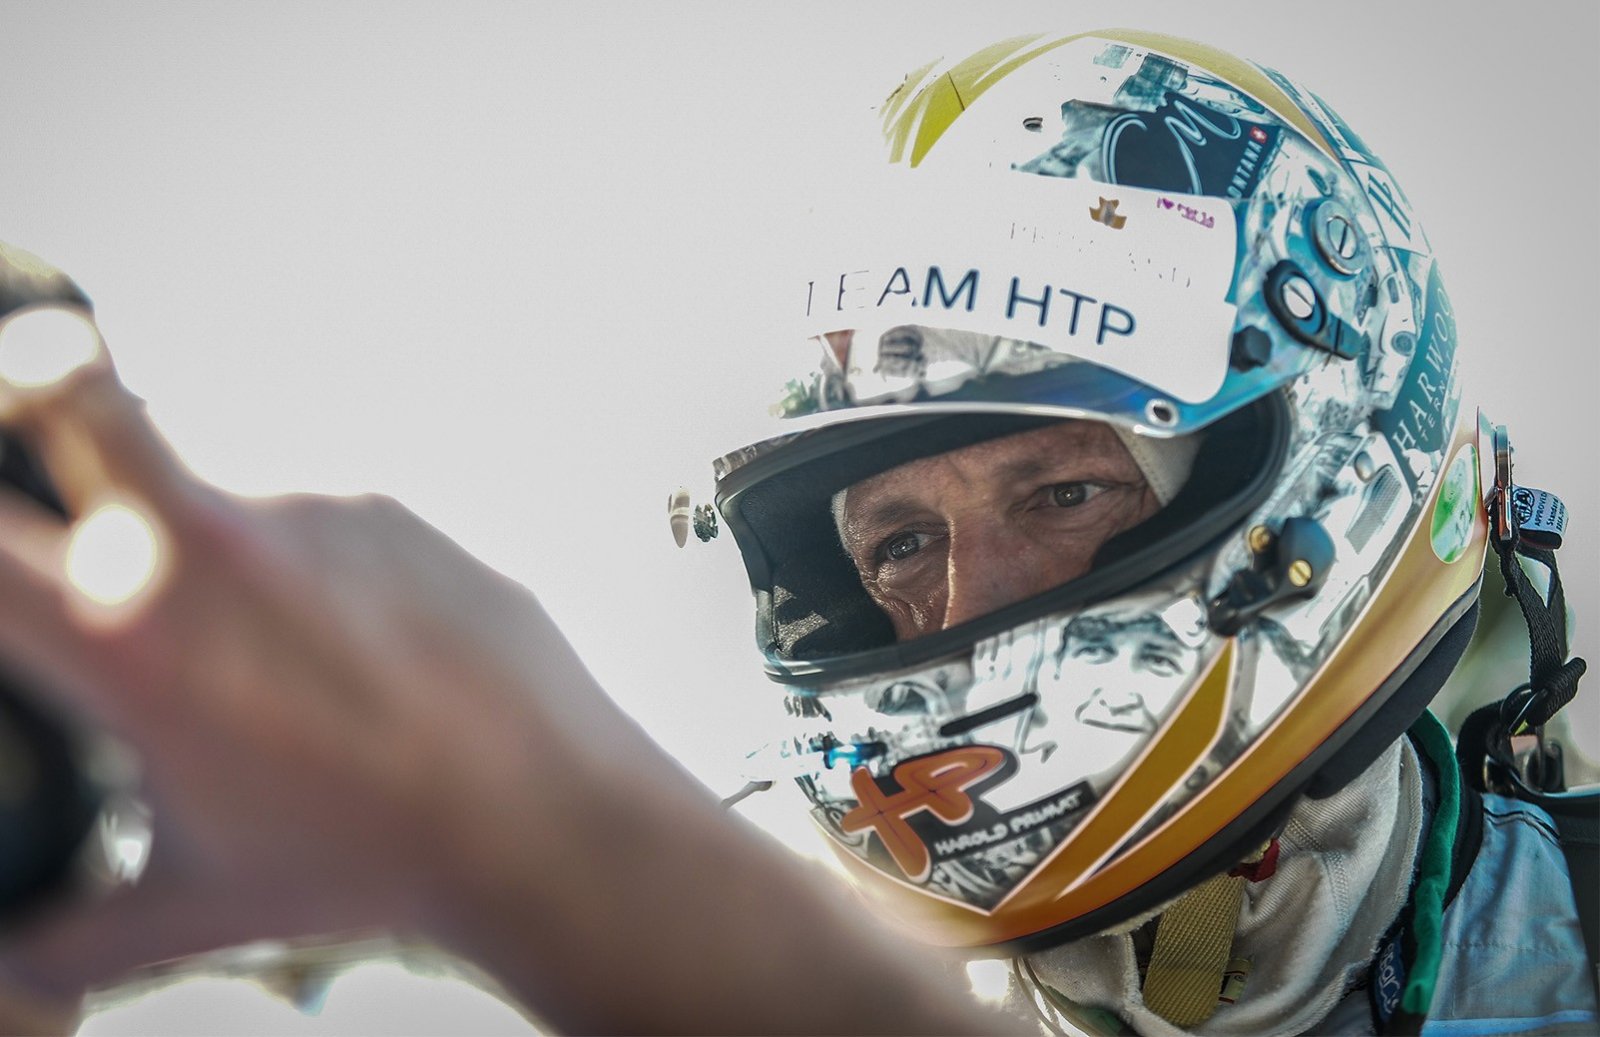 Primat set to end competitive motorsport career at the Nürburgring